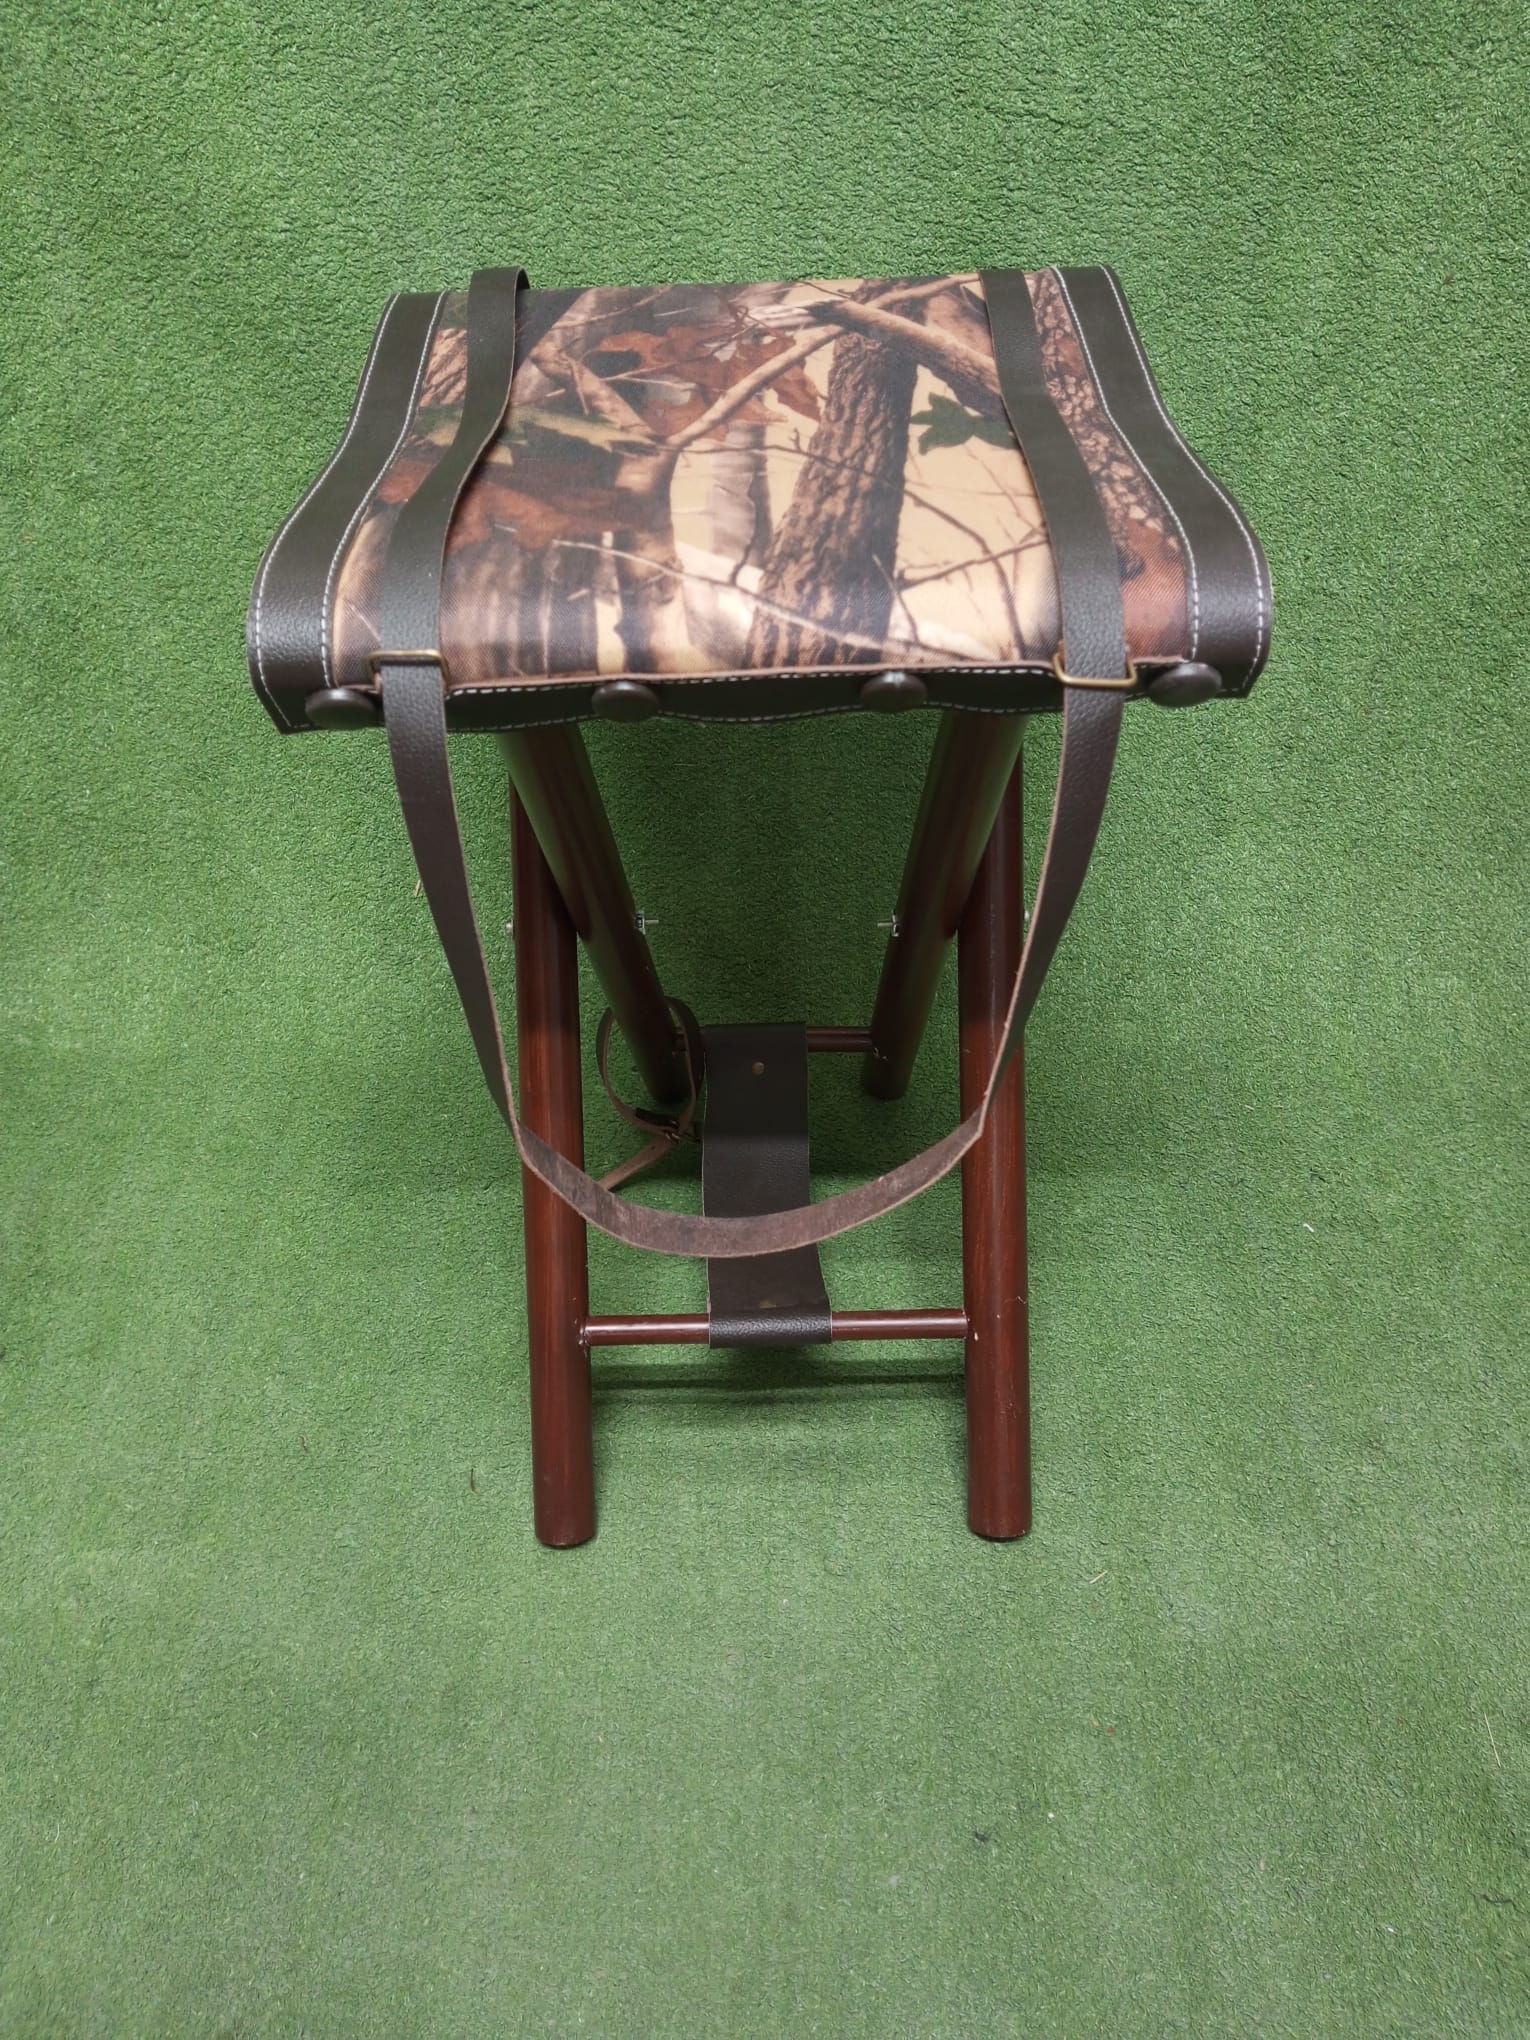 cordura camping stool, camping stool, foldable camping